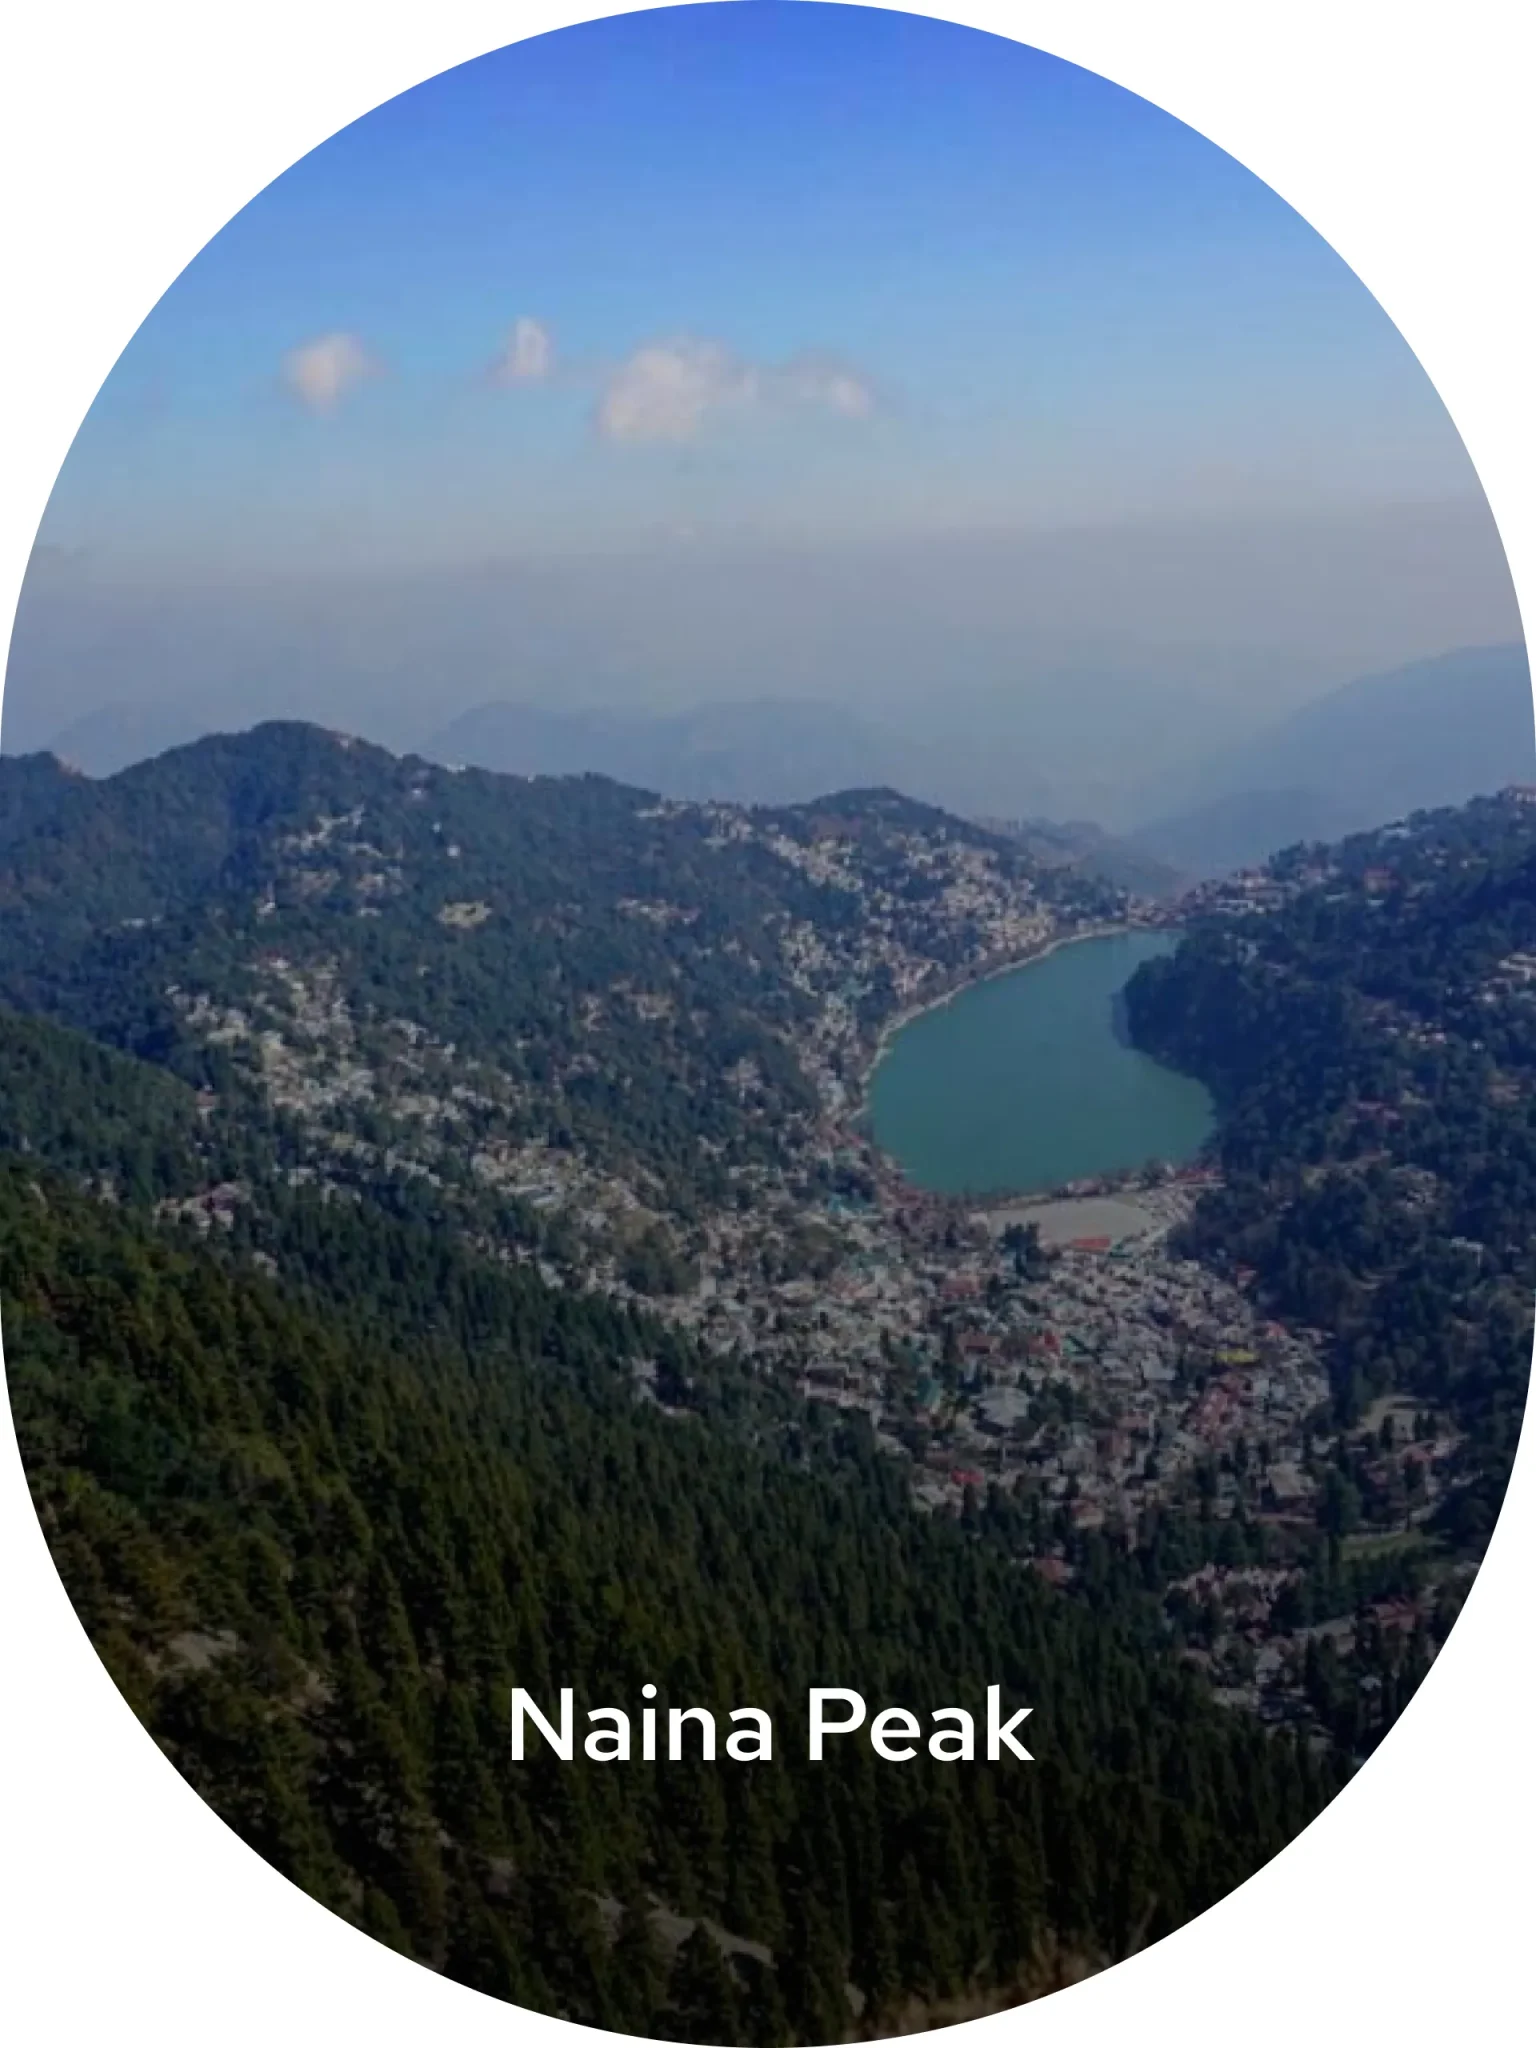 Delhi to naina peak